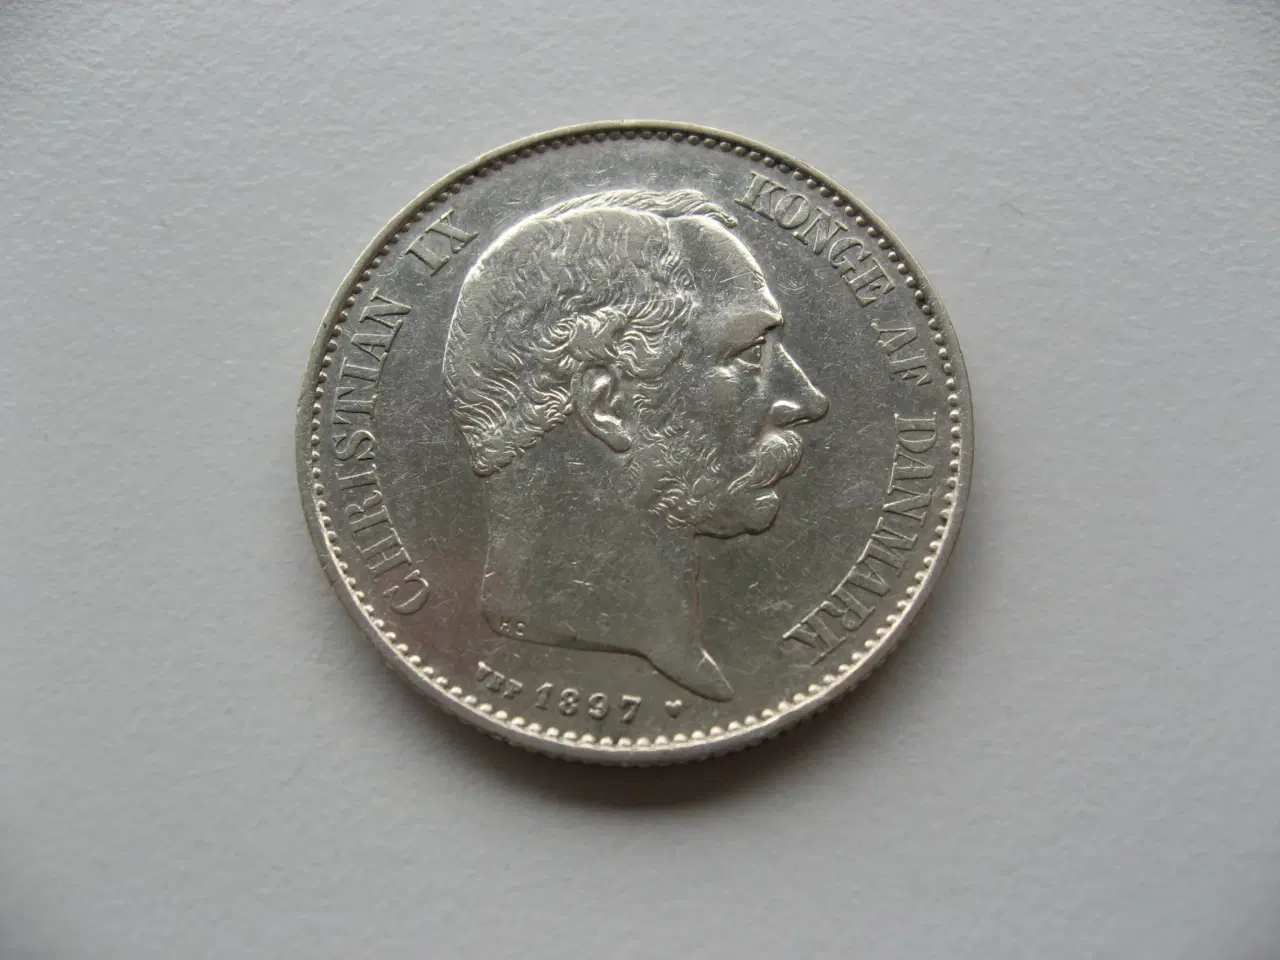 Billede 1 - Særdeles flot sølv 2 kr 1897, den bedste i serien